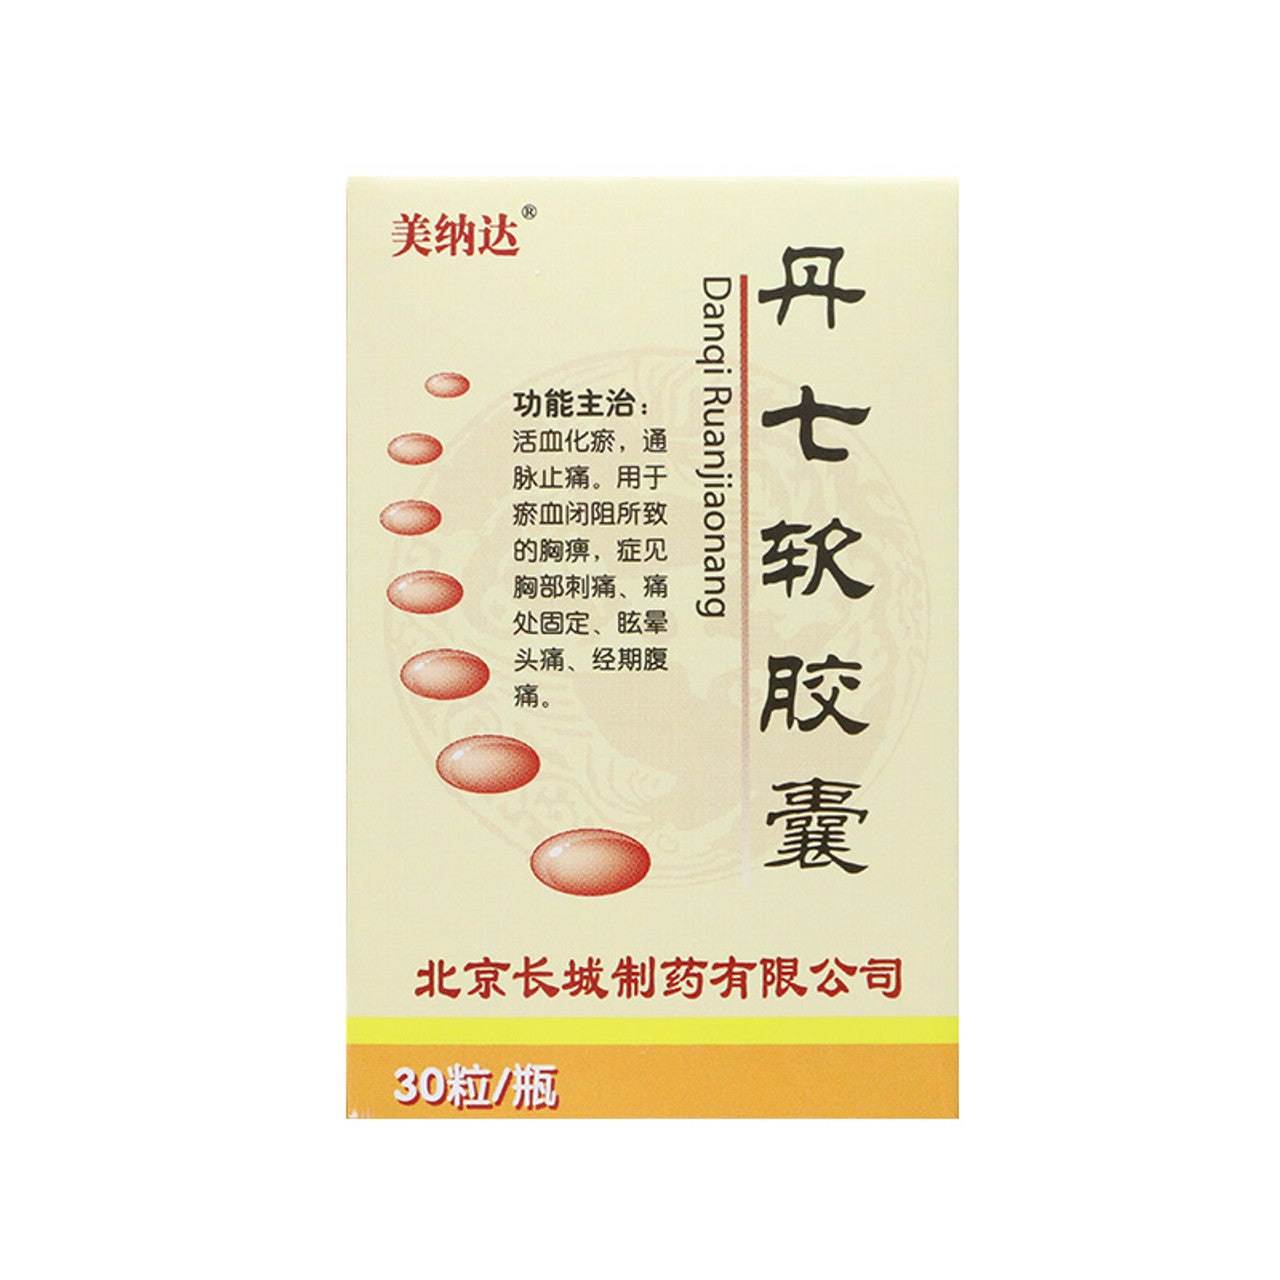 30 capsules*5 boxes/lot. Danqi Ruanjiaonang or Danqi soft capsule For Angina Pectoris